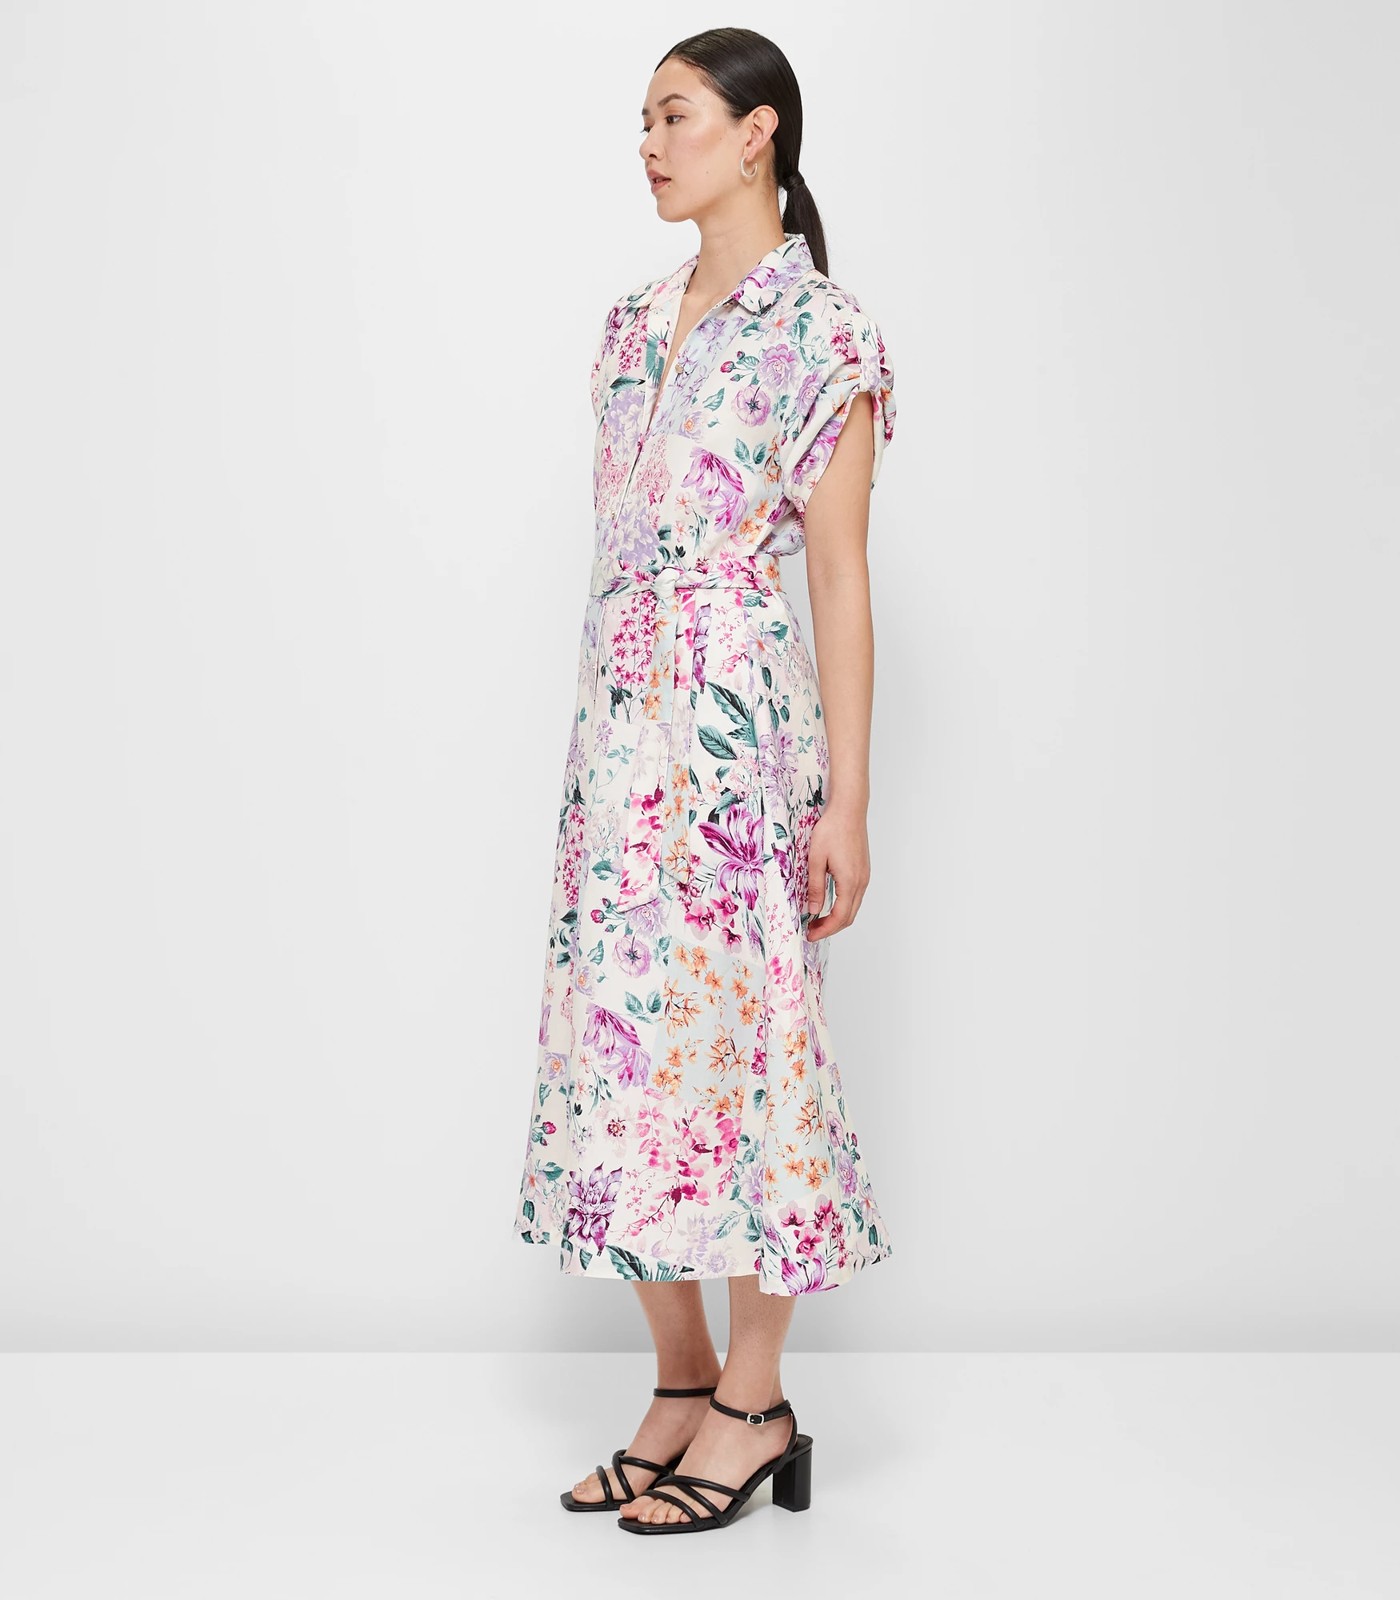 Linen Blend Shirt Dress - Preview | Target Australia